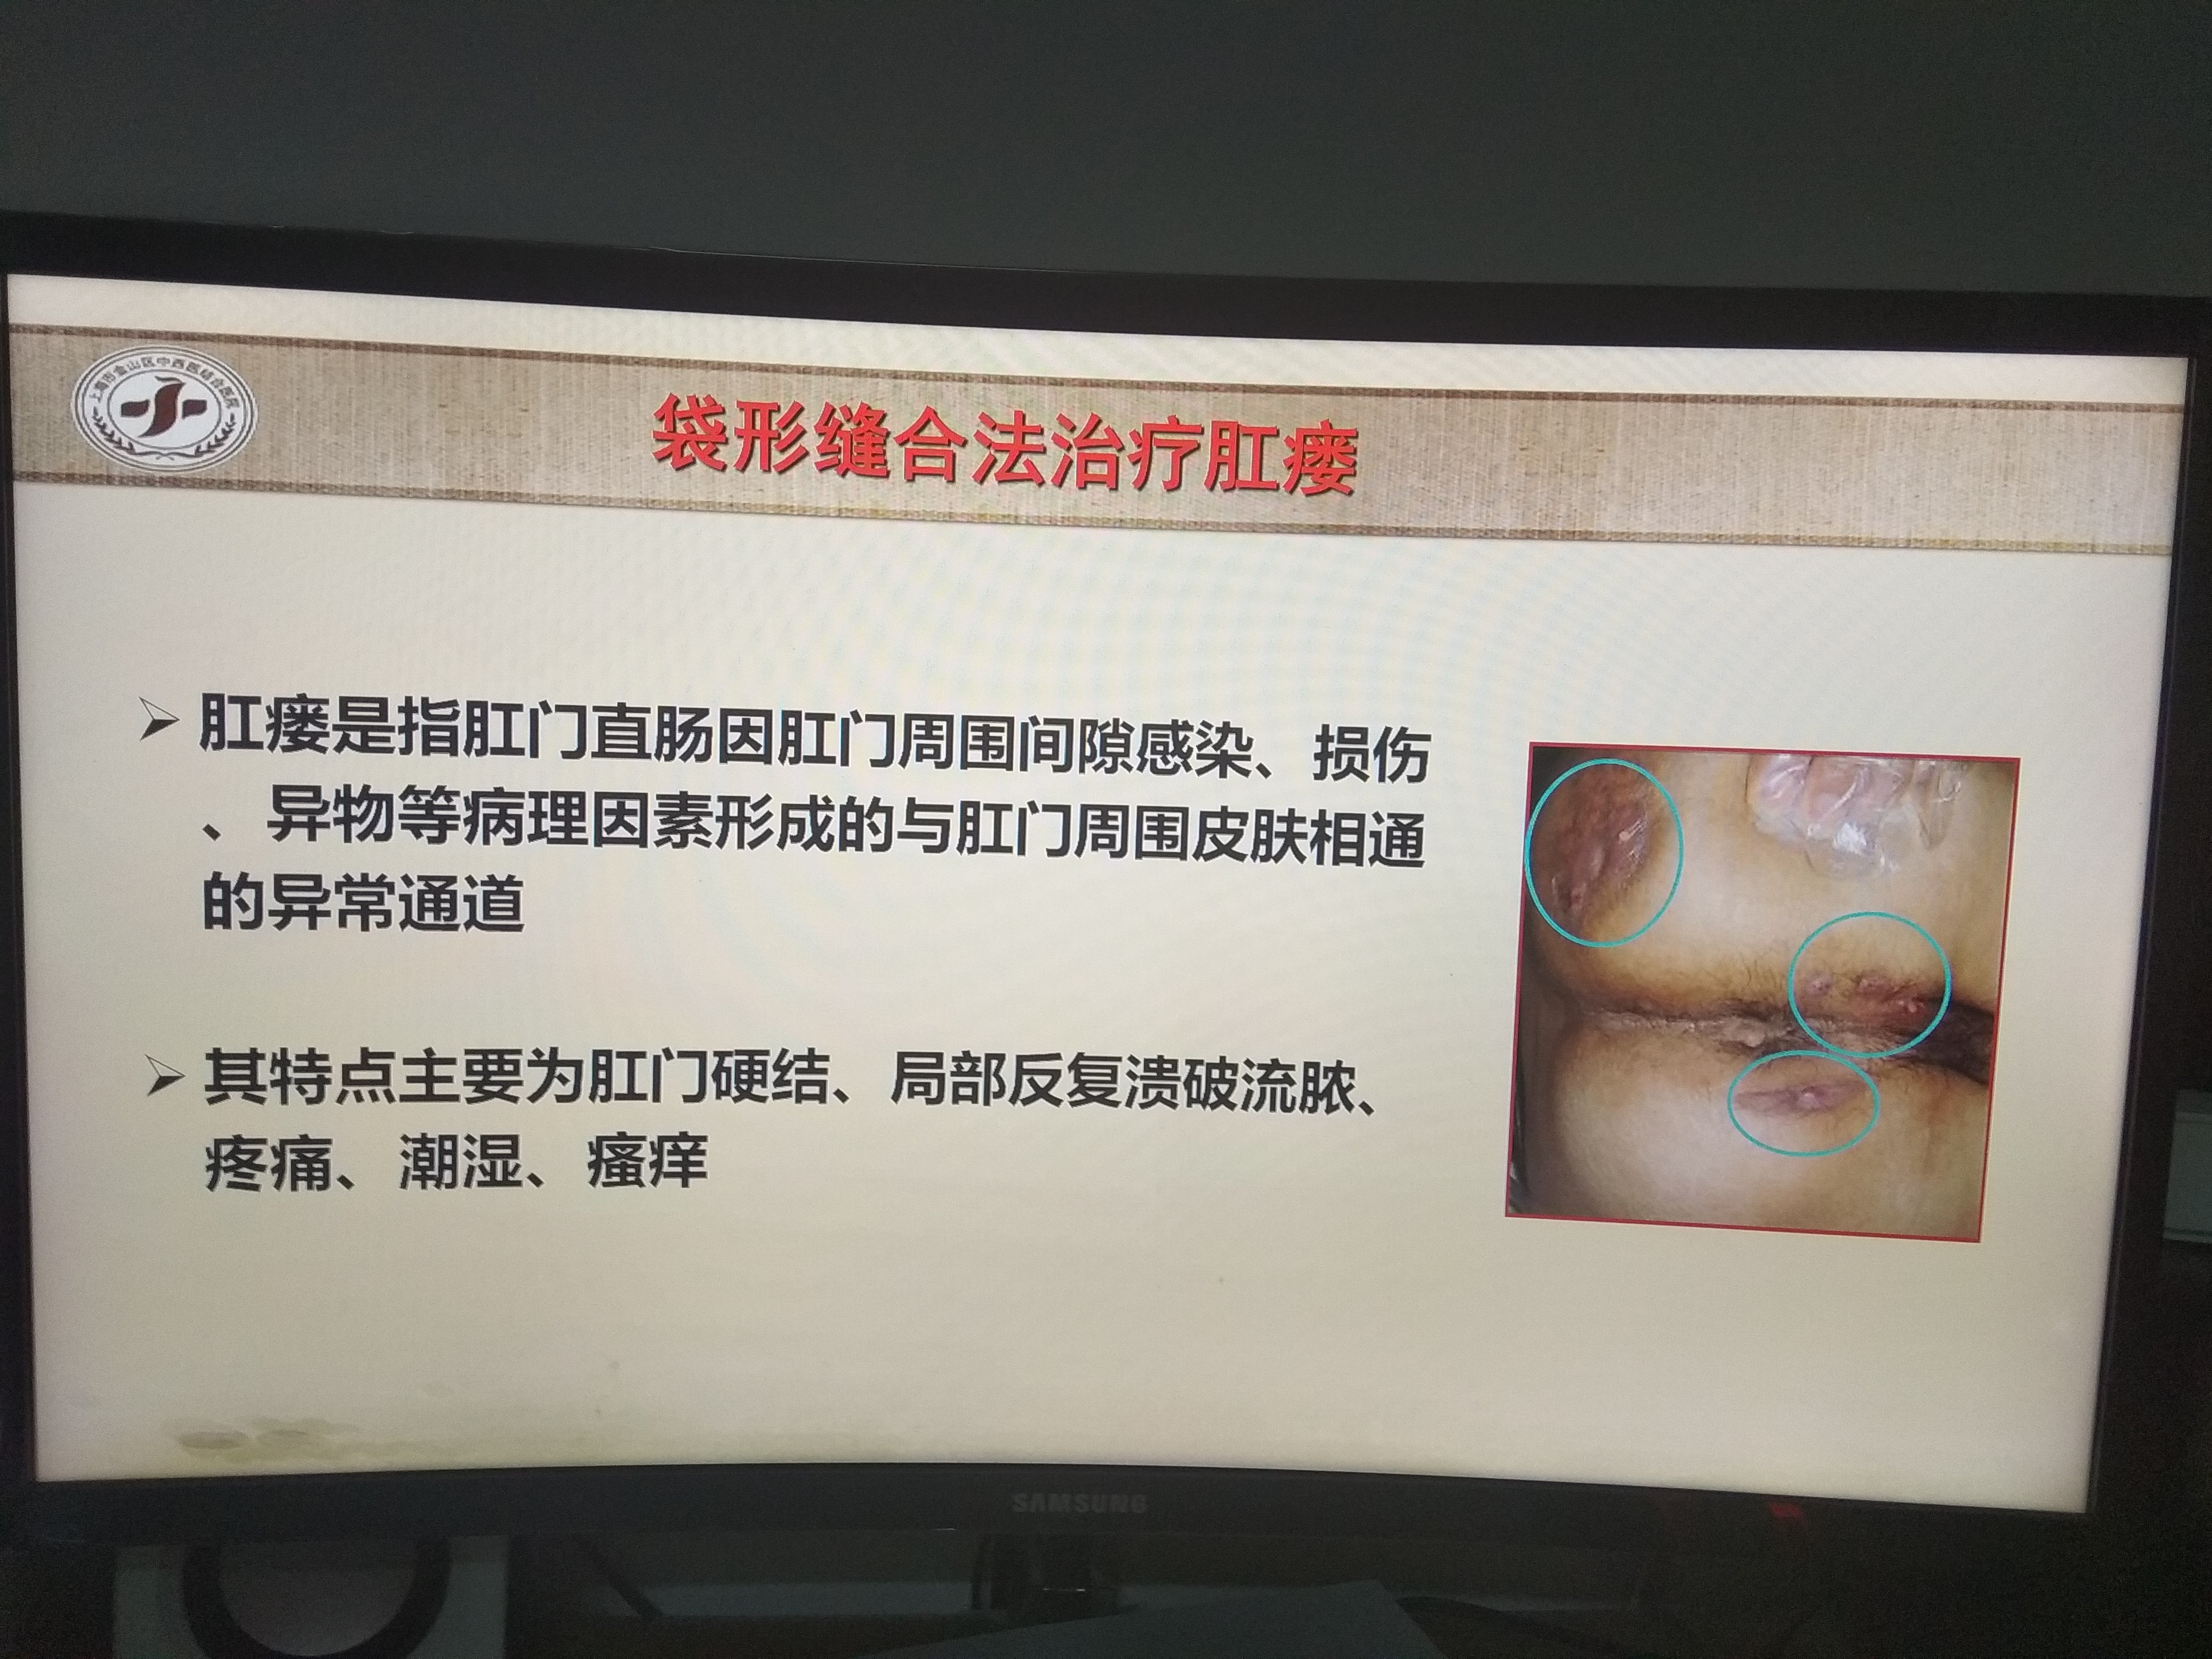 枫泾医院肛肠科特色手术方法介绍---袋形缝合法治疗肛瘘